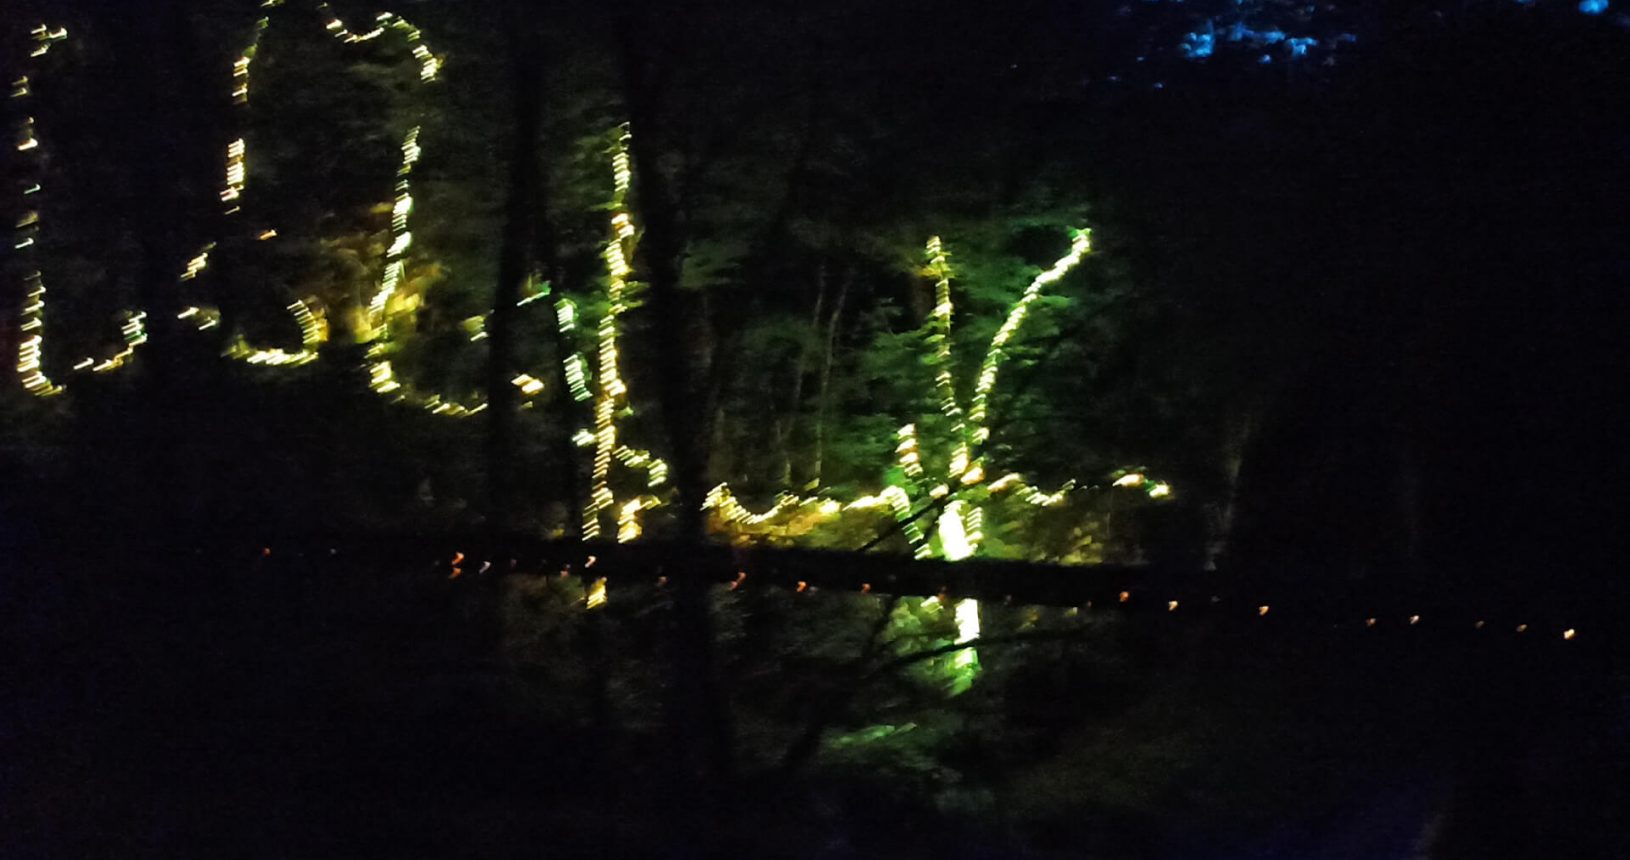 Night lights at Lightland park